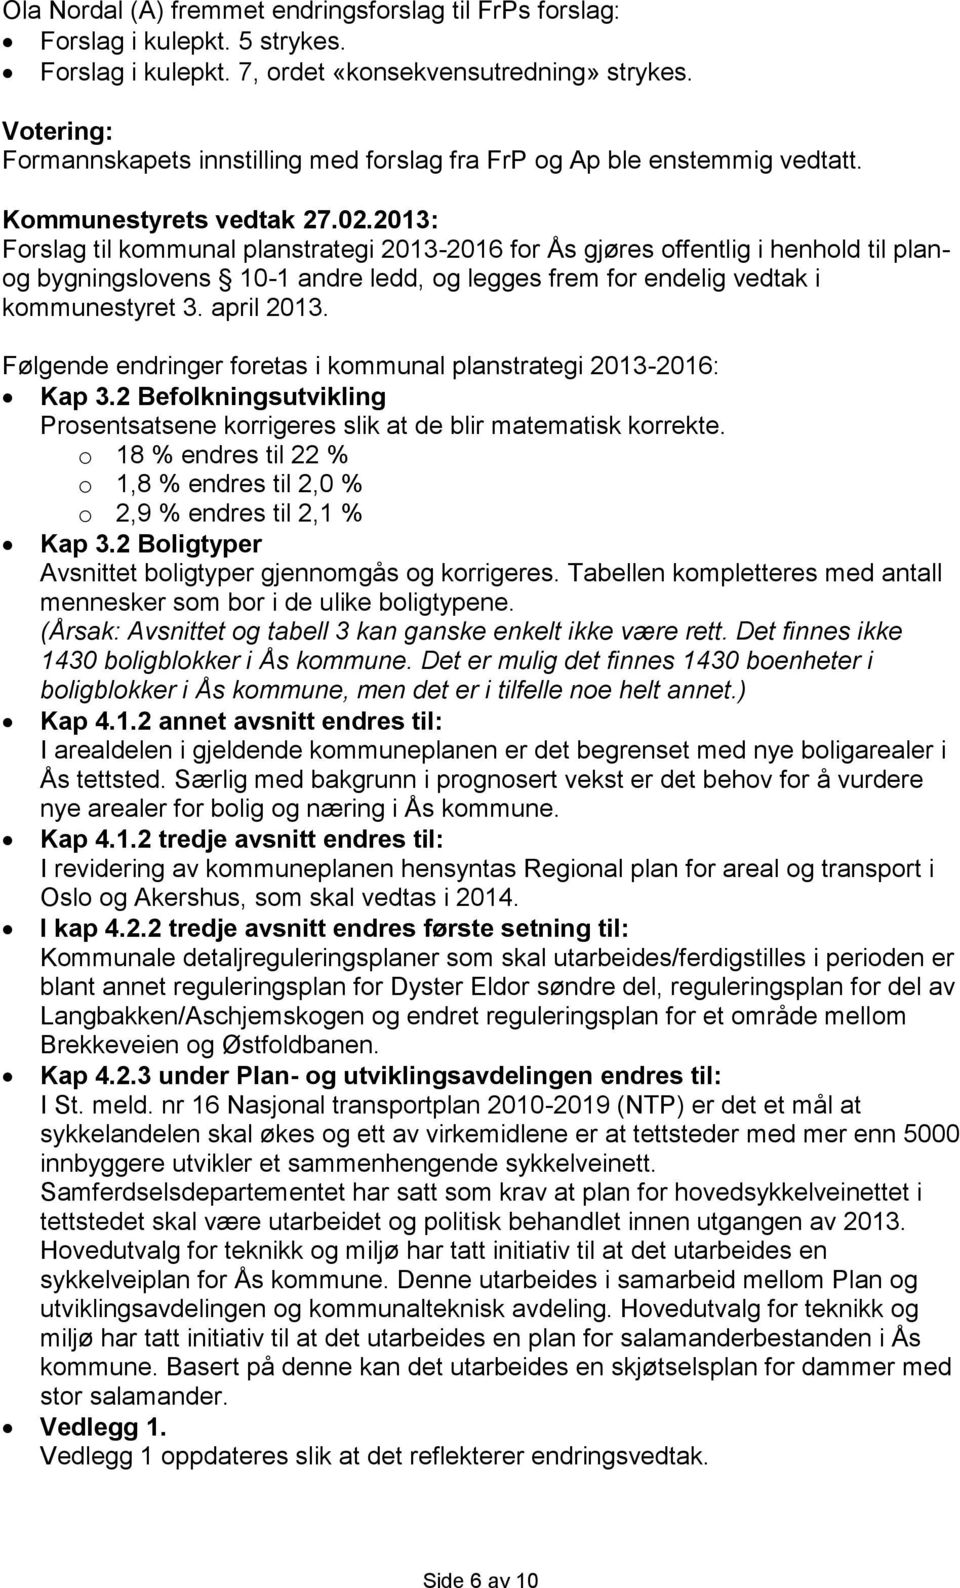 Forslag til kommunal planstrategi 2013-2016 for Ås gjøres offentlig i henhold til planog bygningslovens 10-1 andre ledd, og legges frem for endelig vedtak i kommunestyret 3. april 2013.